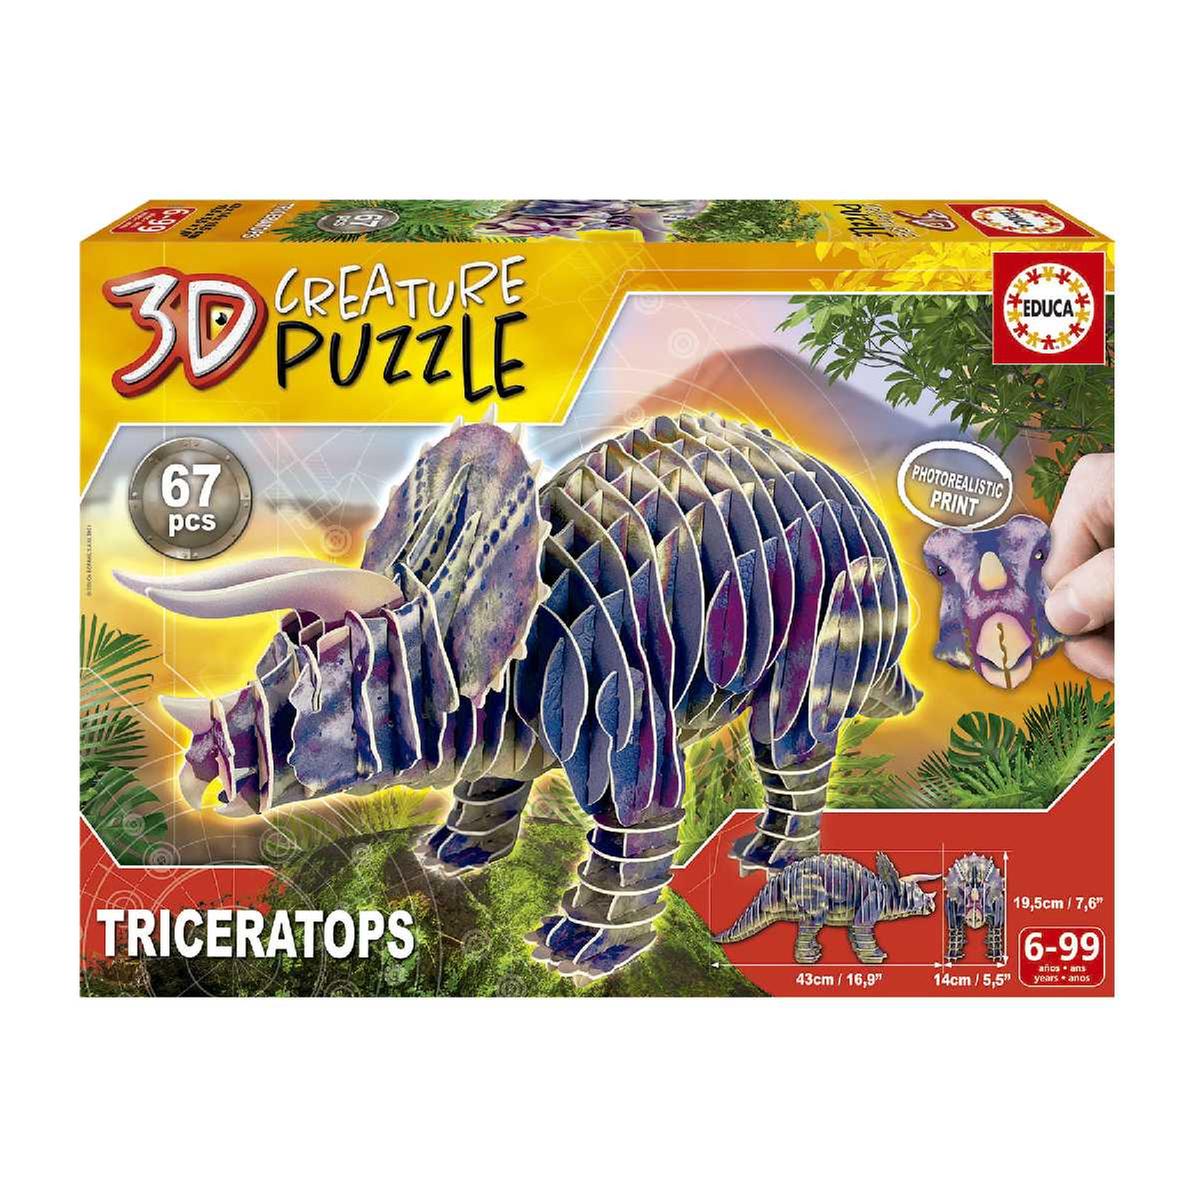 Brachiosaurus 3D Creature Puzzle - Educa Borras